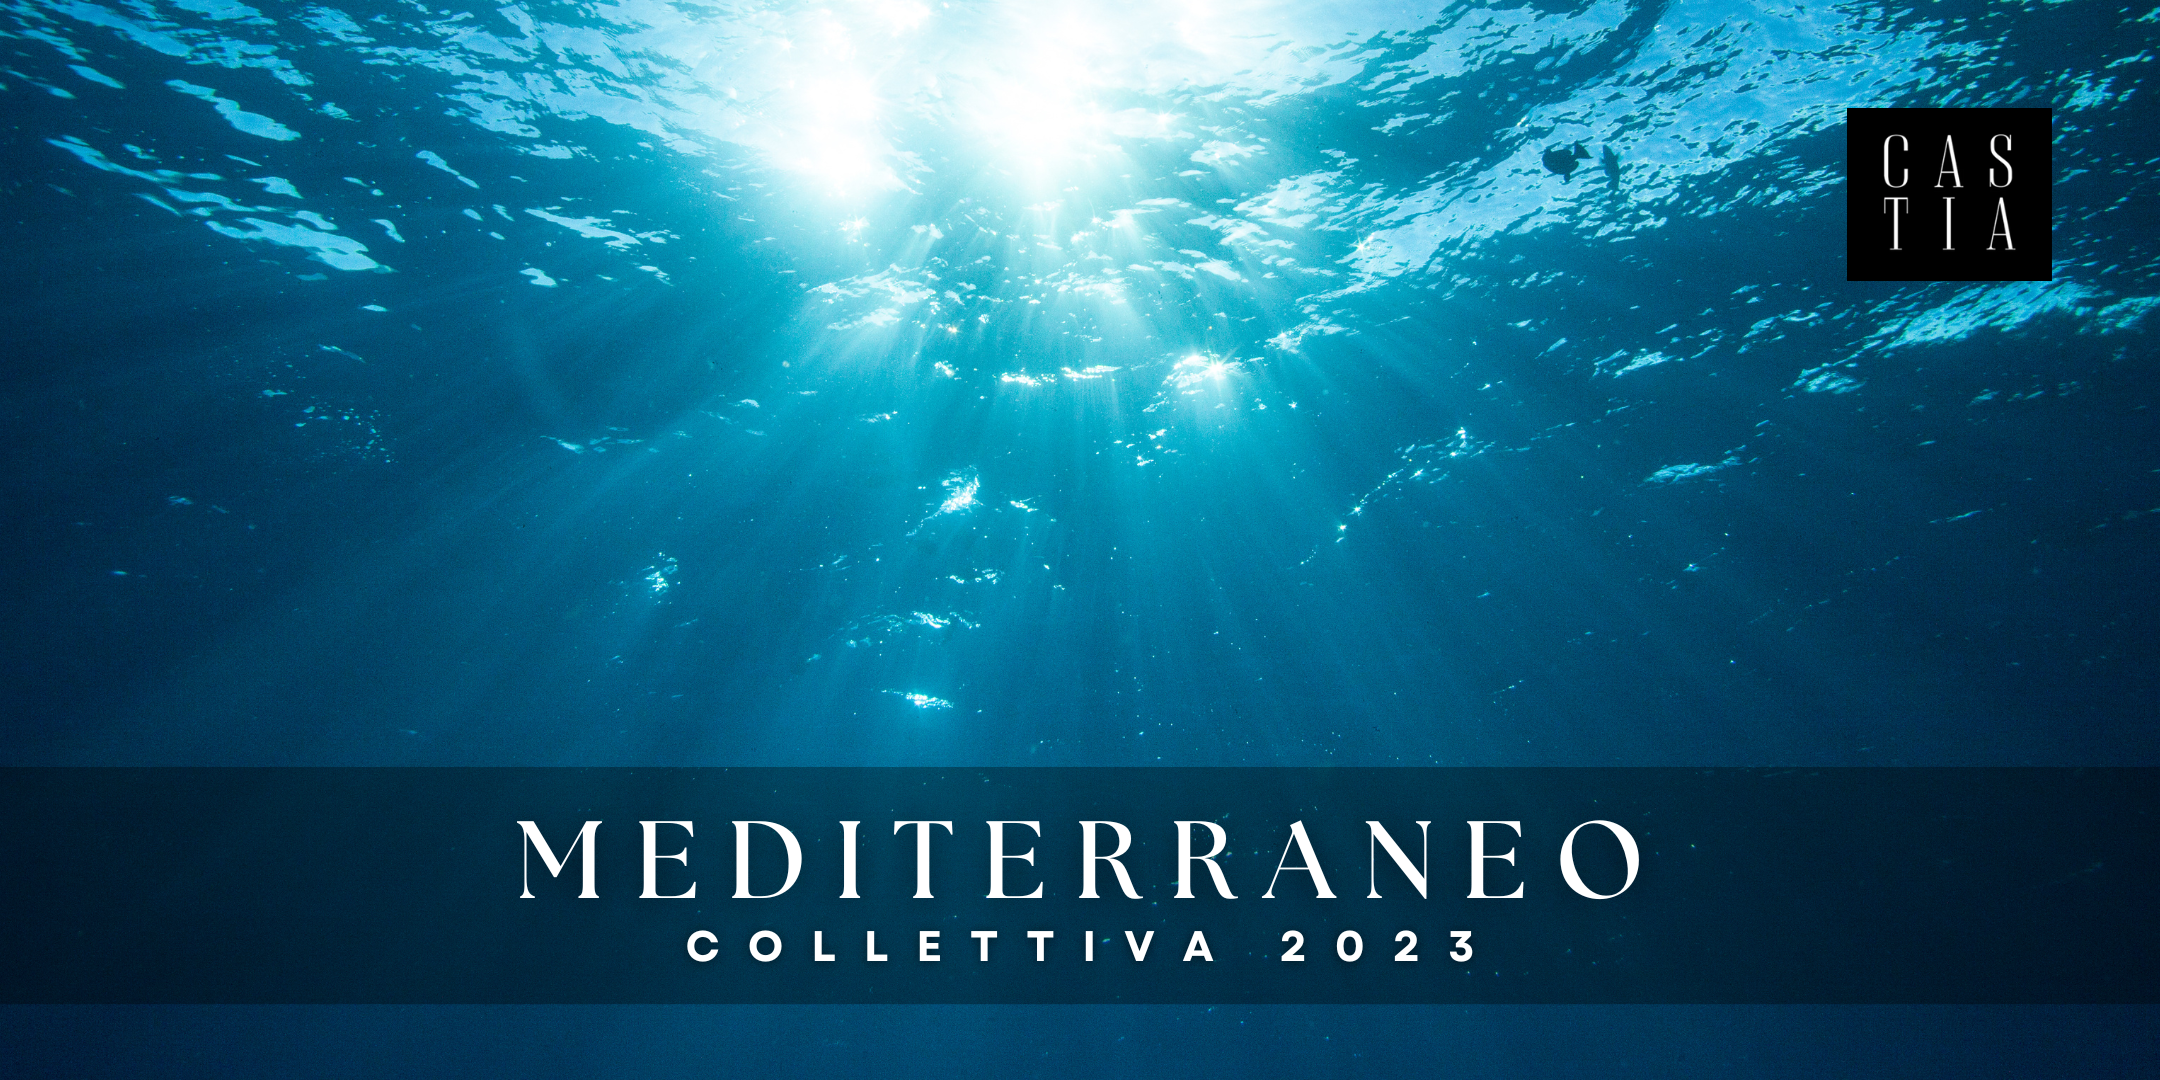 Mediterraneo | Inaugurazione Collettiva 2023 | Castia Art